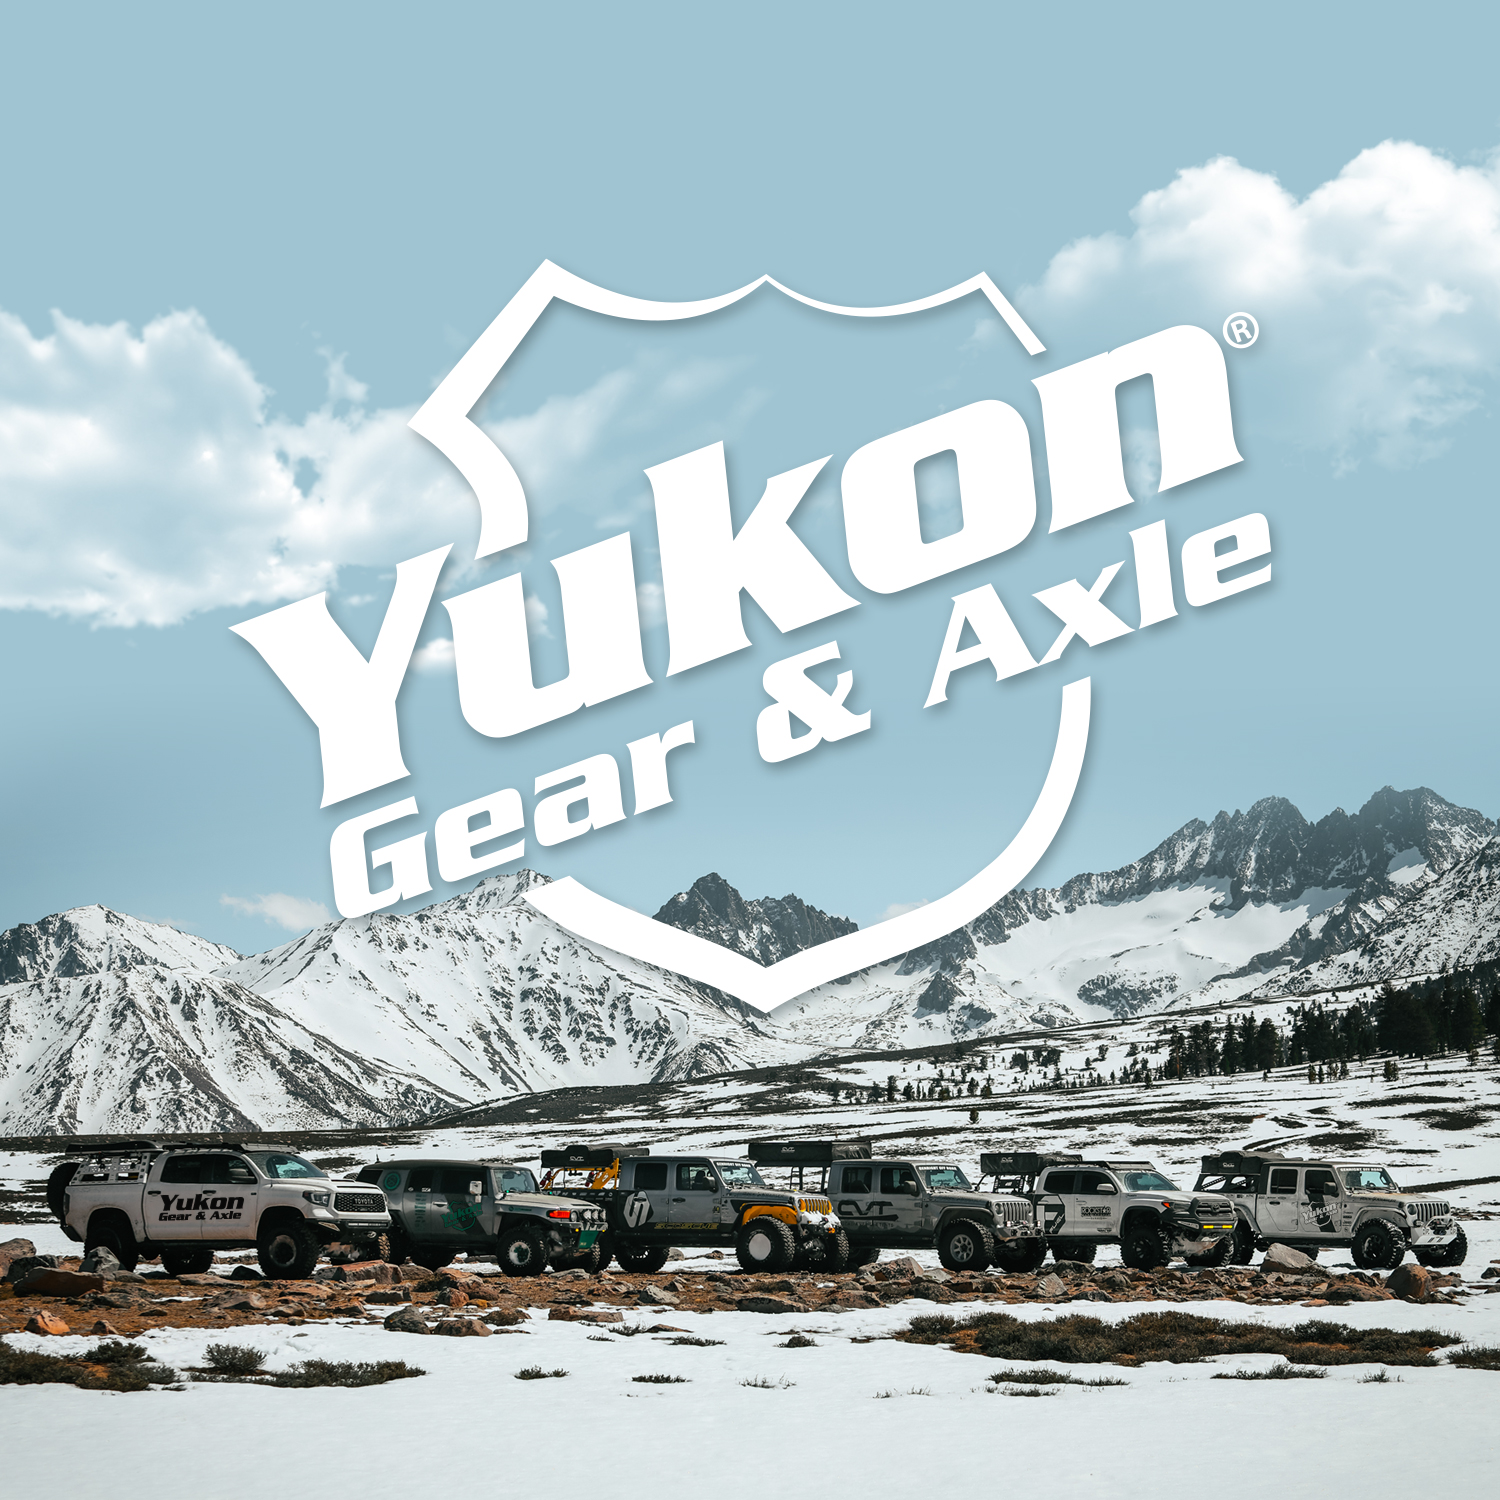 Yukon Master Overhaul kit for GM 7.5", Vega, Monza, or Starfire only 